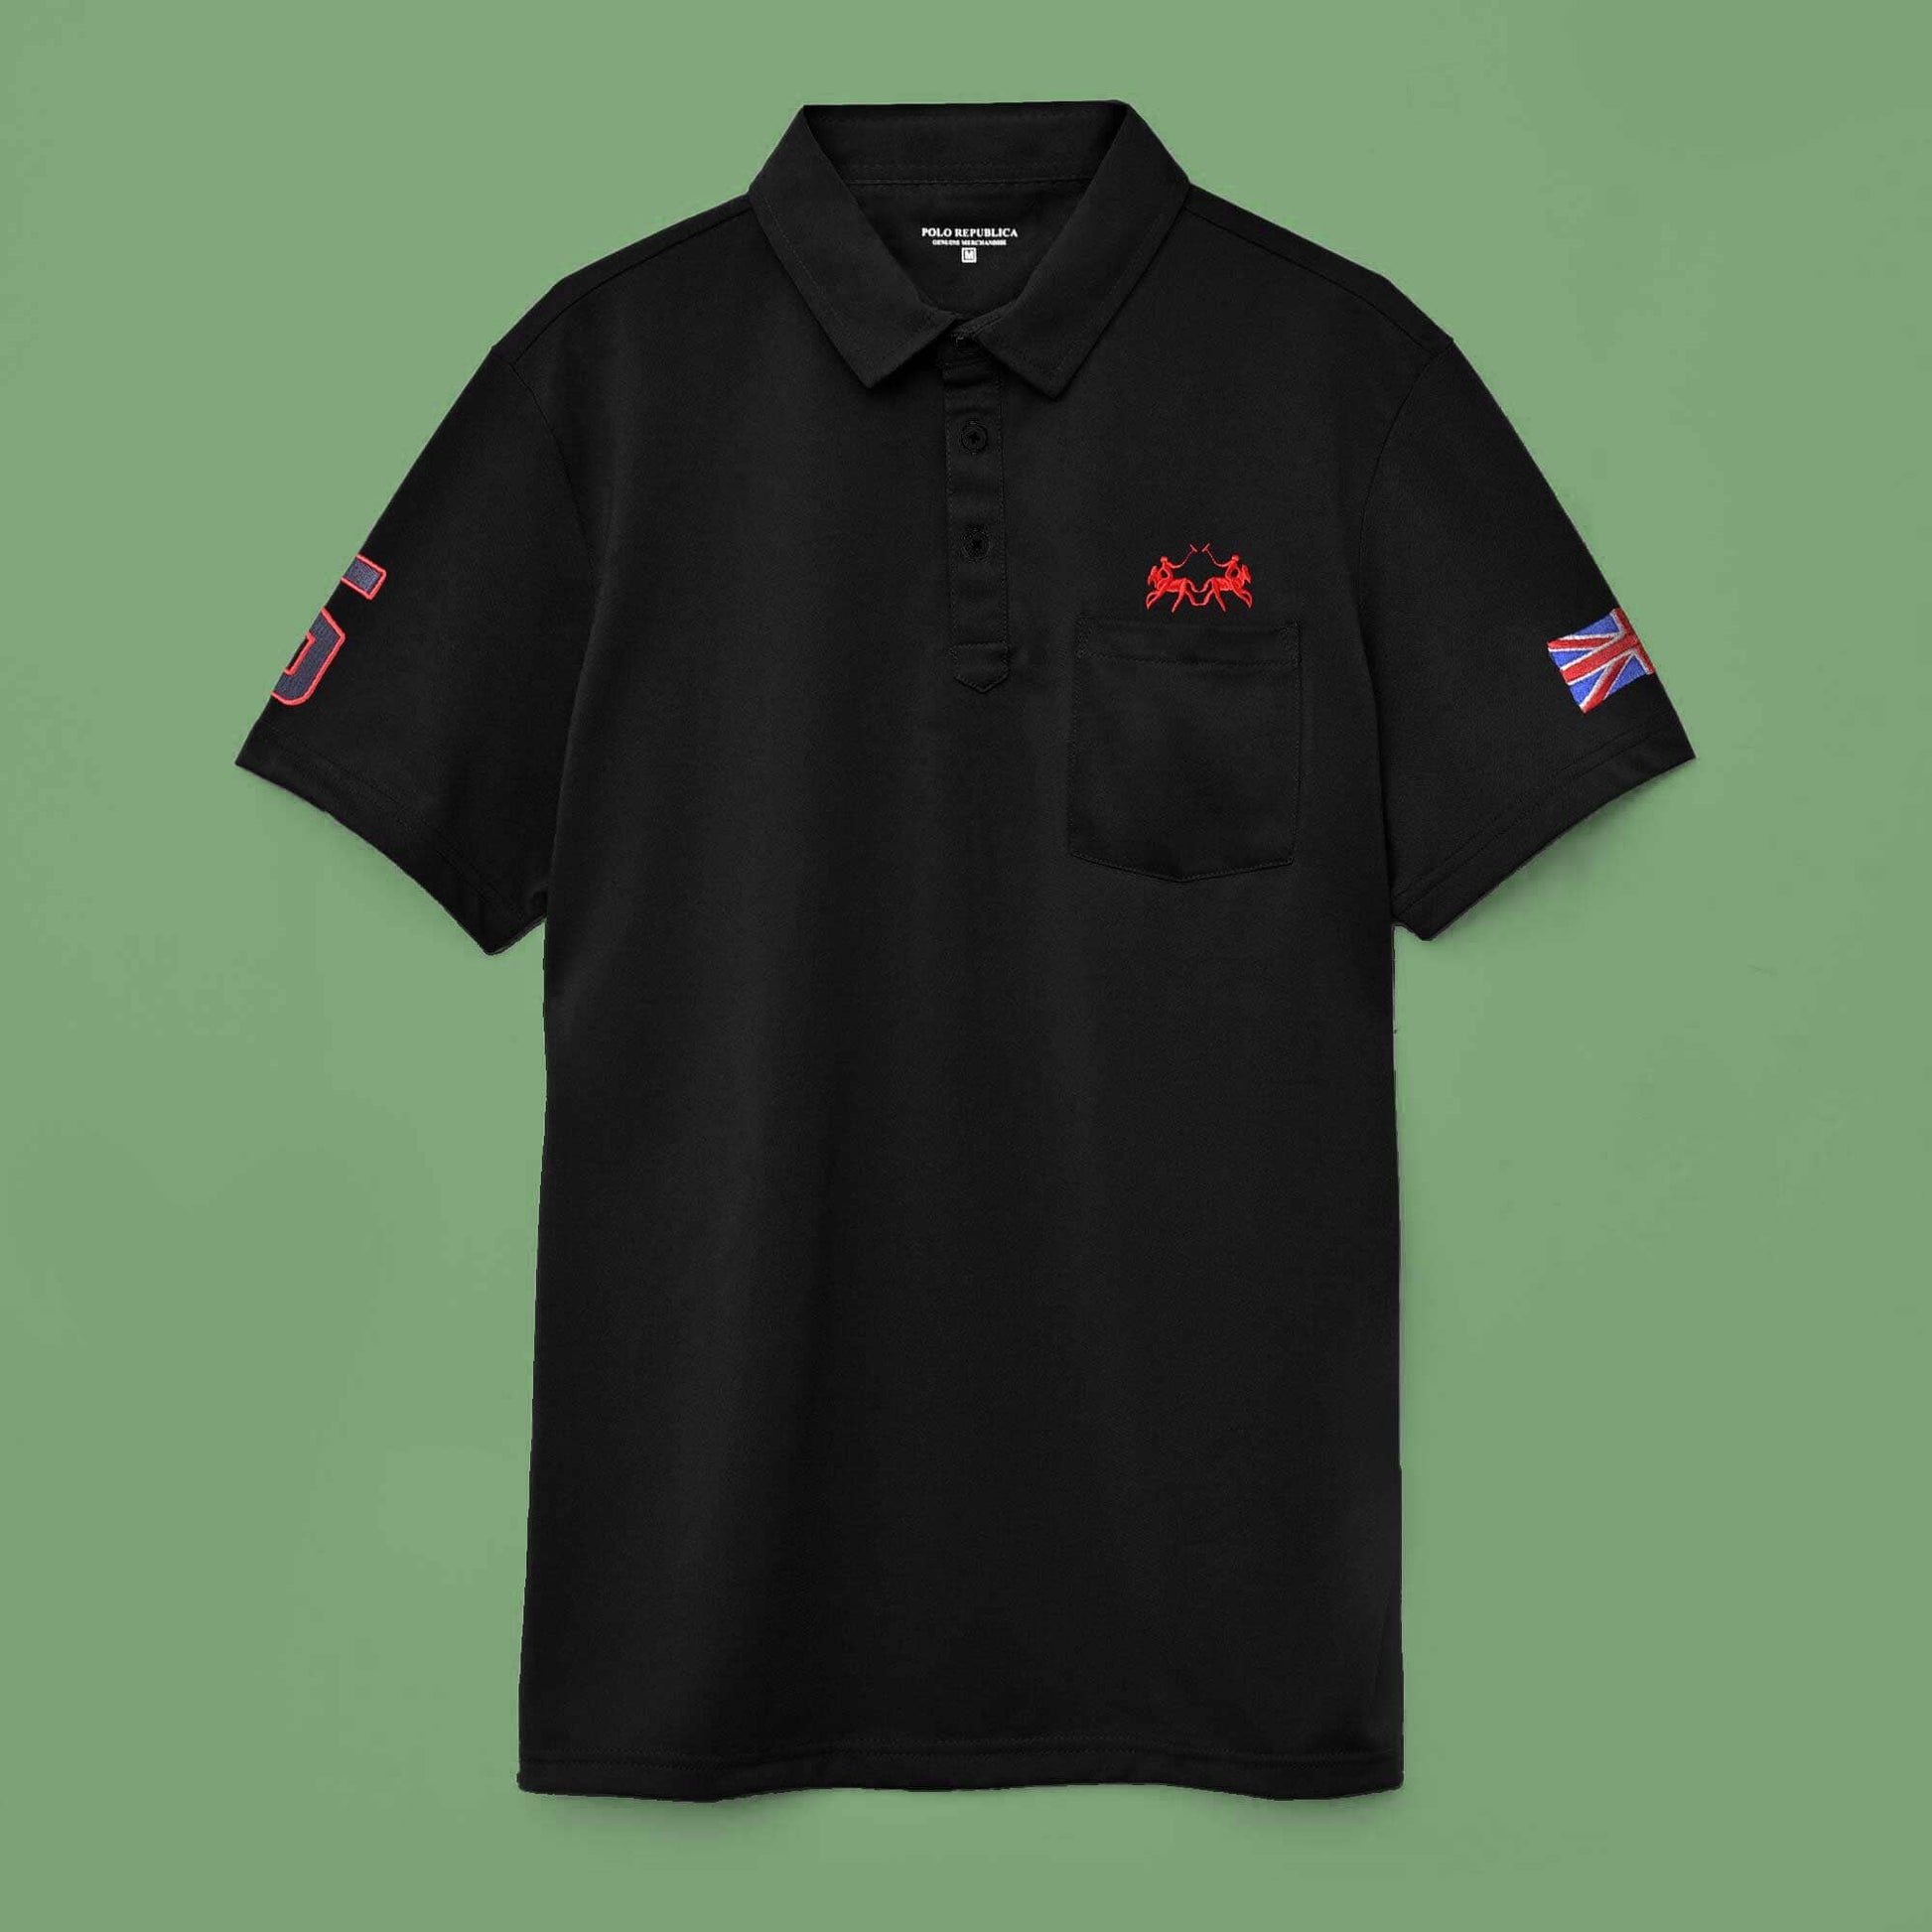 Polo Republica Men's Twin Rider 5 & England Flag Embroidered Pocket Polo Shirt Men's Polo Shirt Polo Republica 